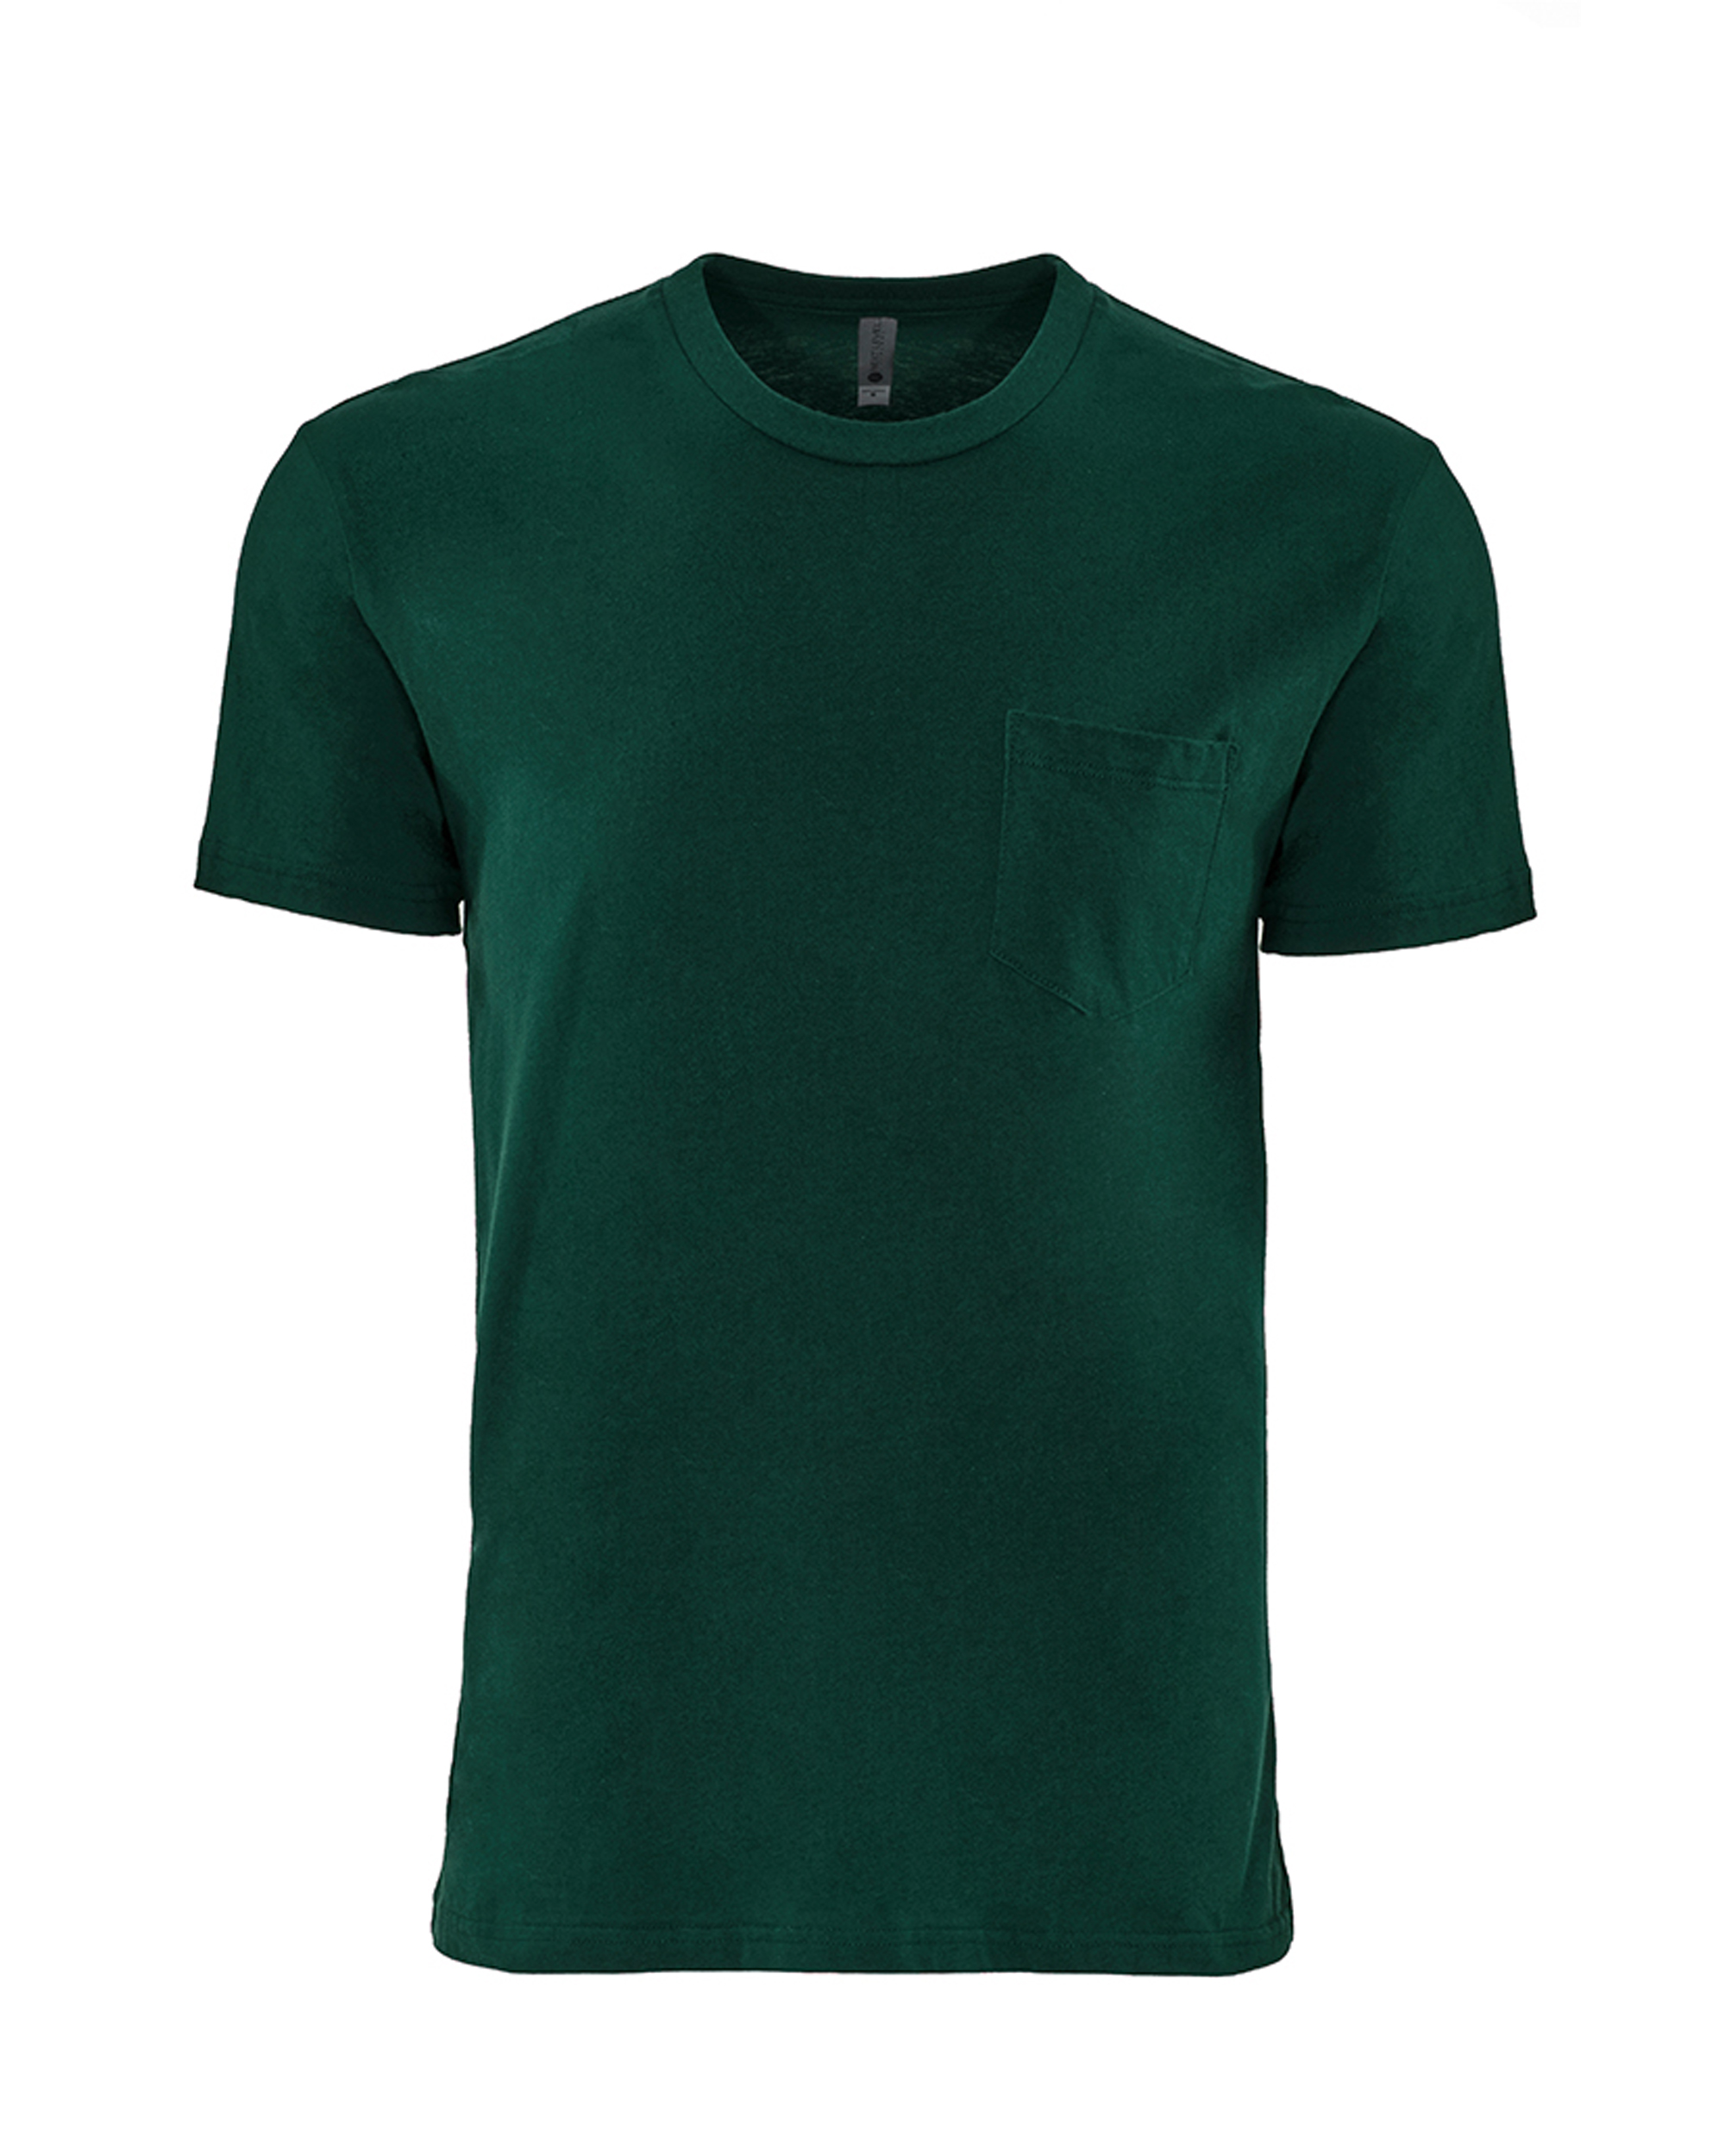 Next Level Apparel® 3605 Unisex Cotton Pocket T-Shirt